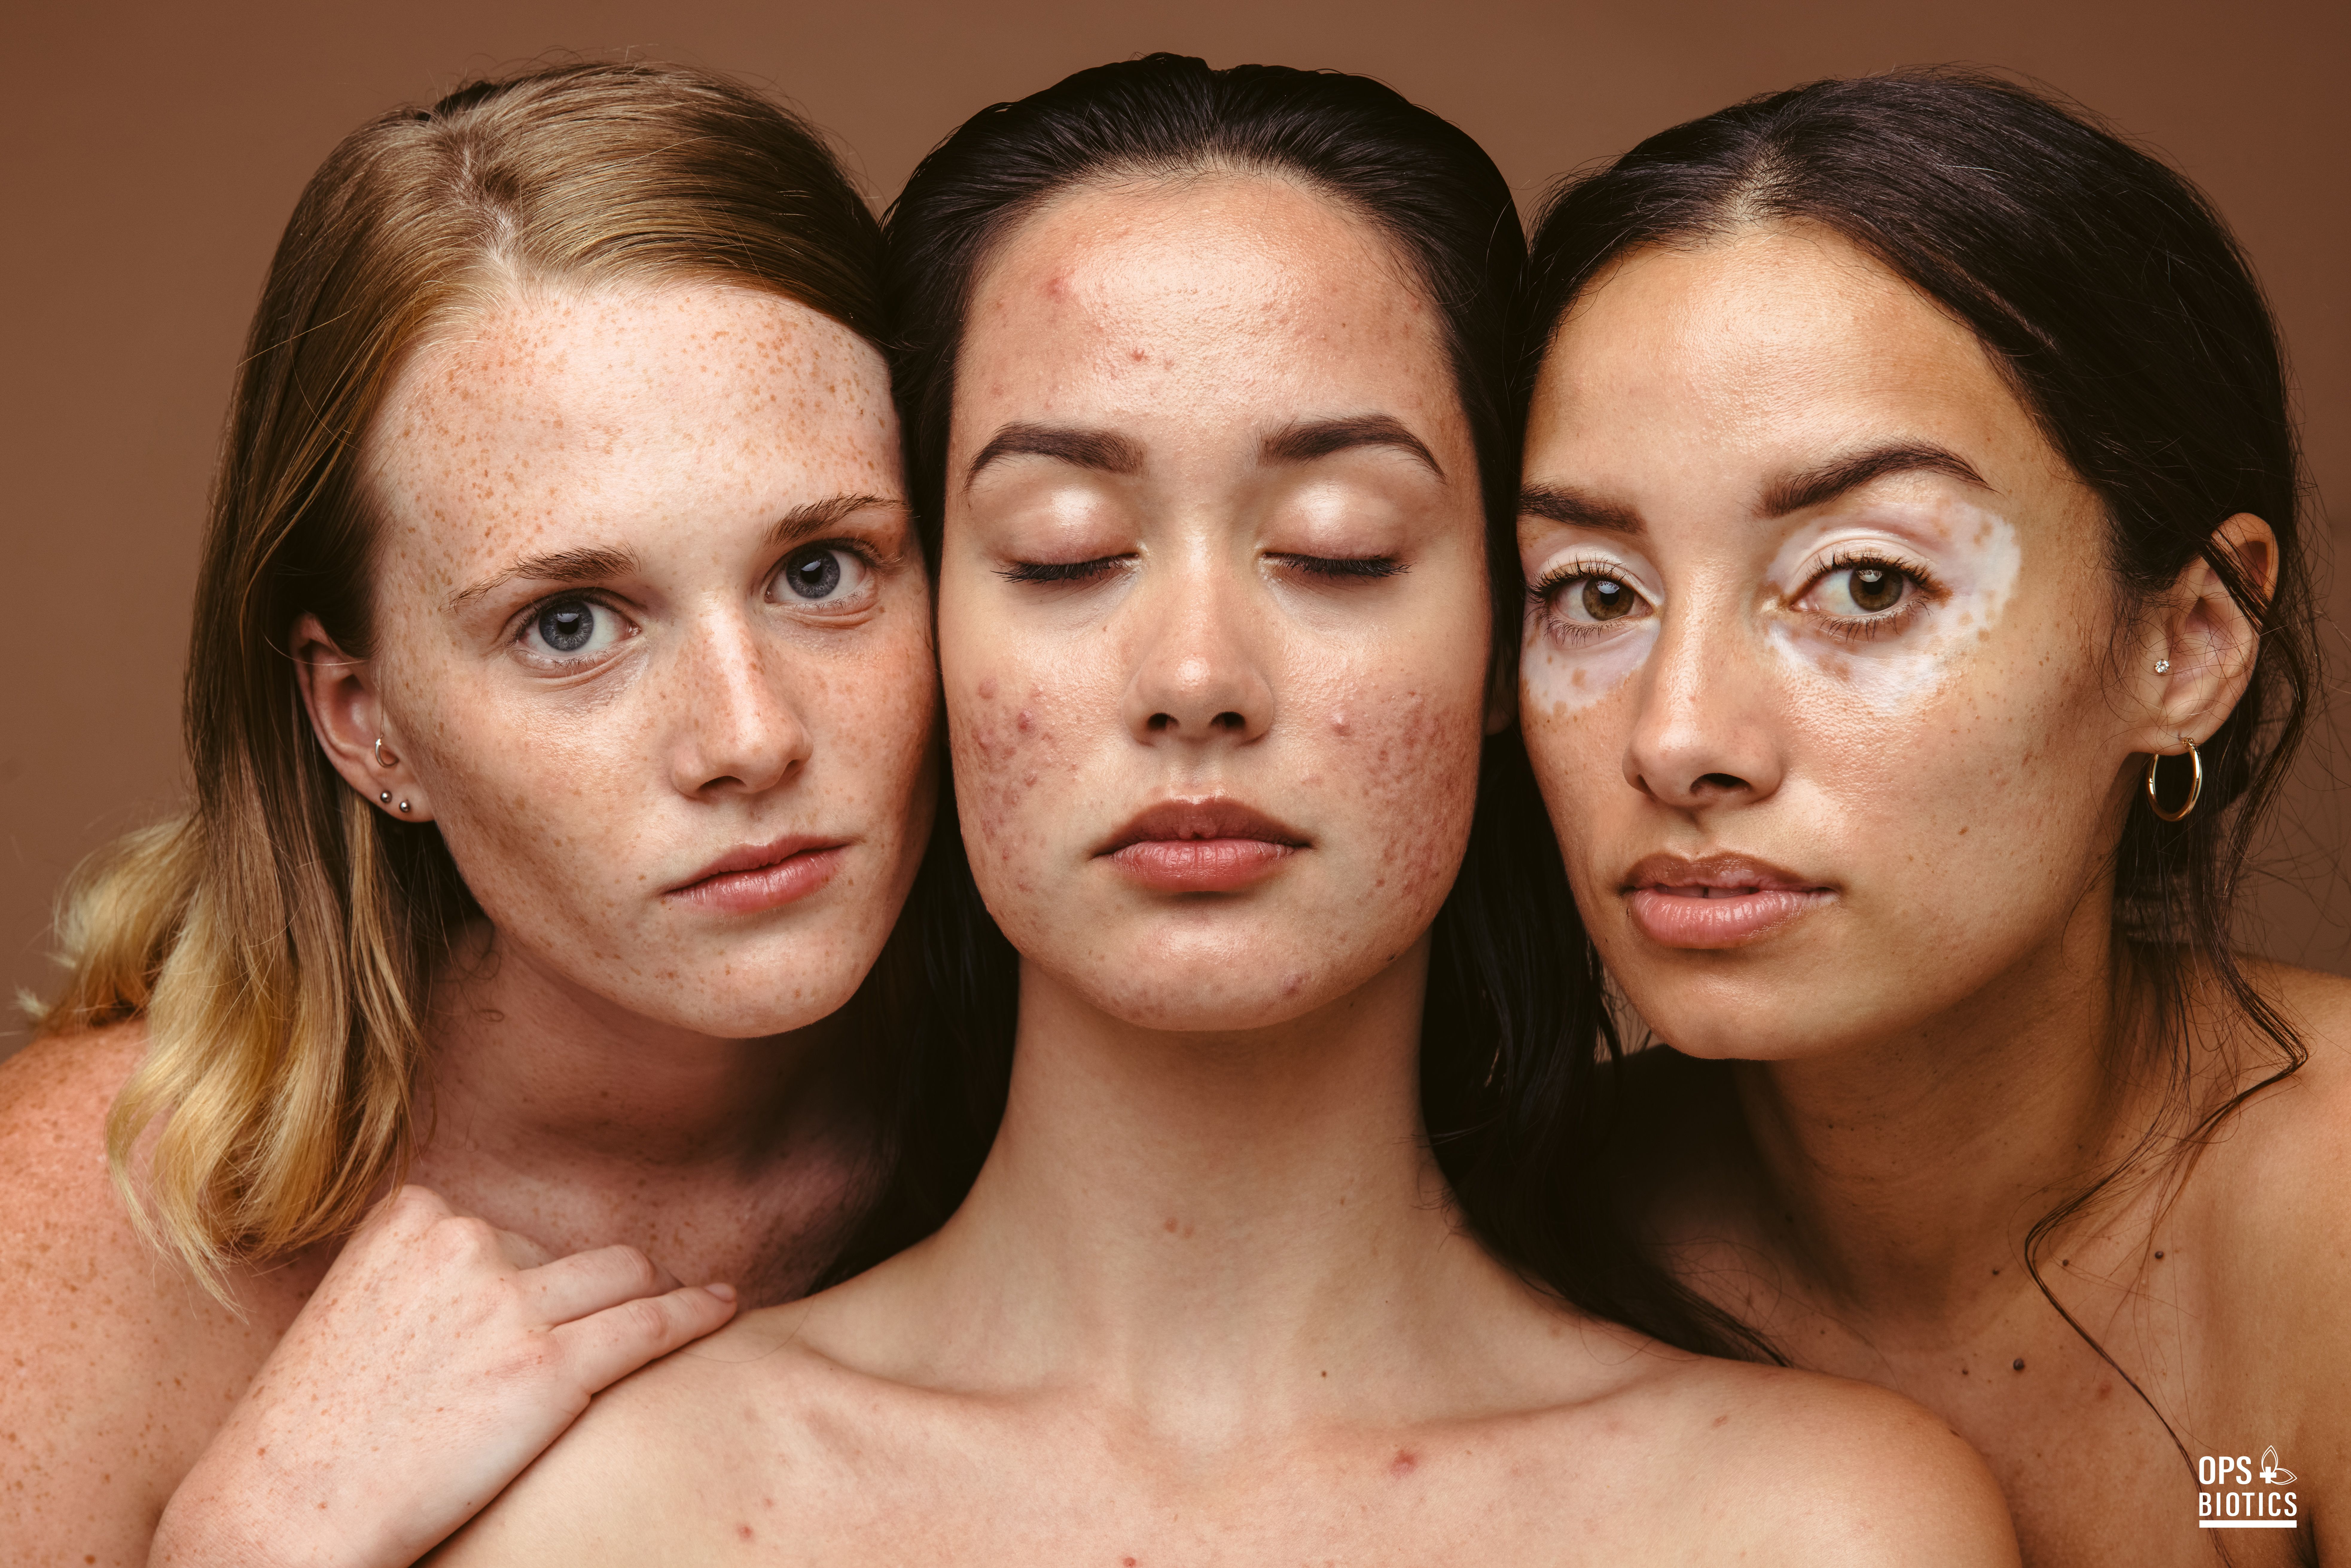 Zdrava kožna barijera: zašto je u njoj tajna zdrave i lijepe kože?